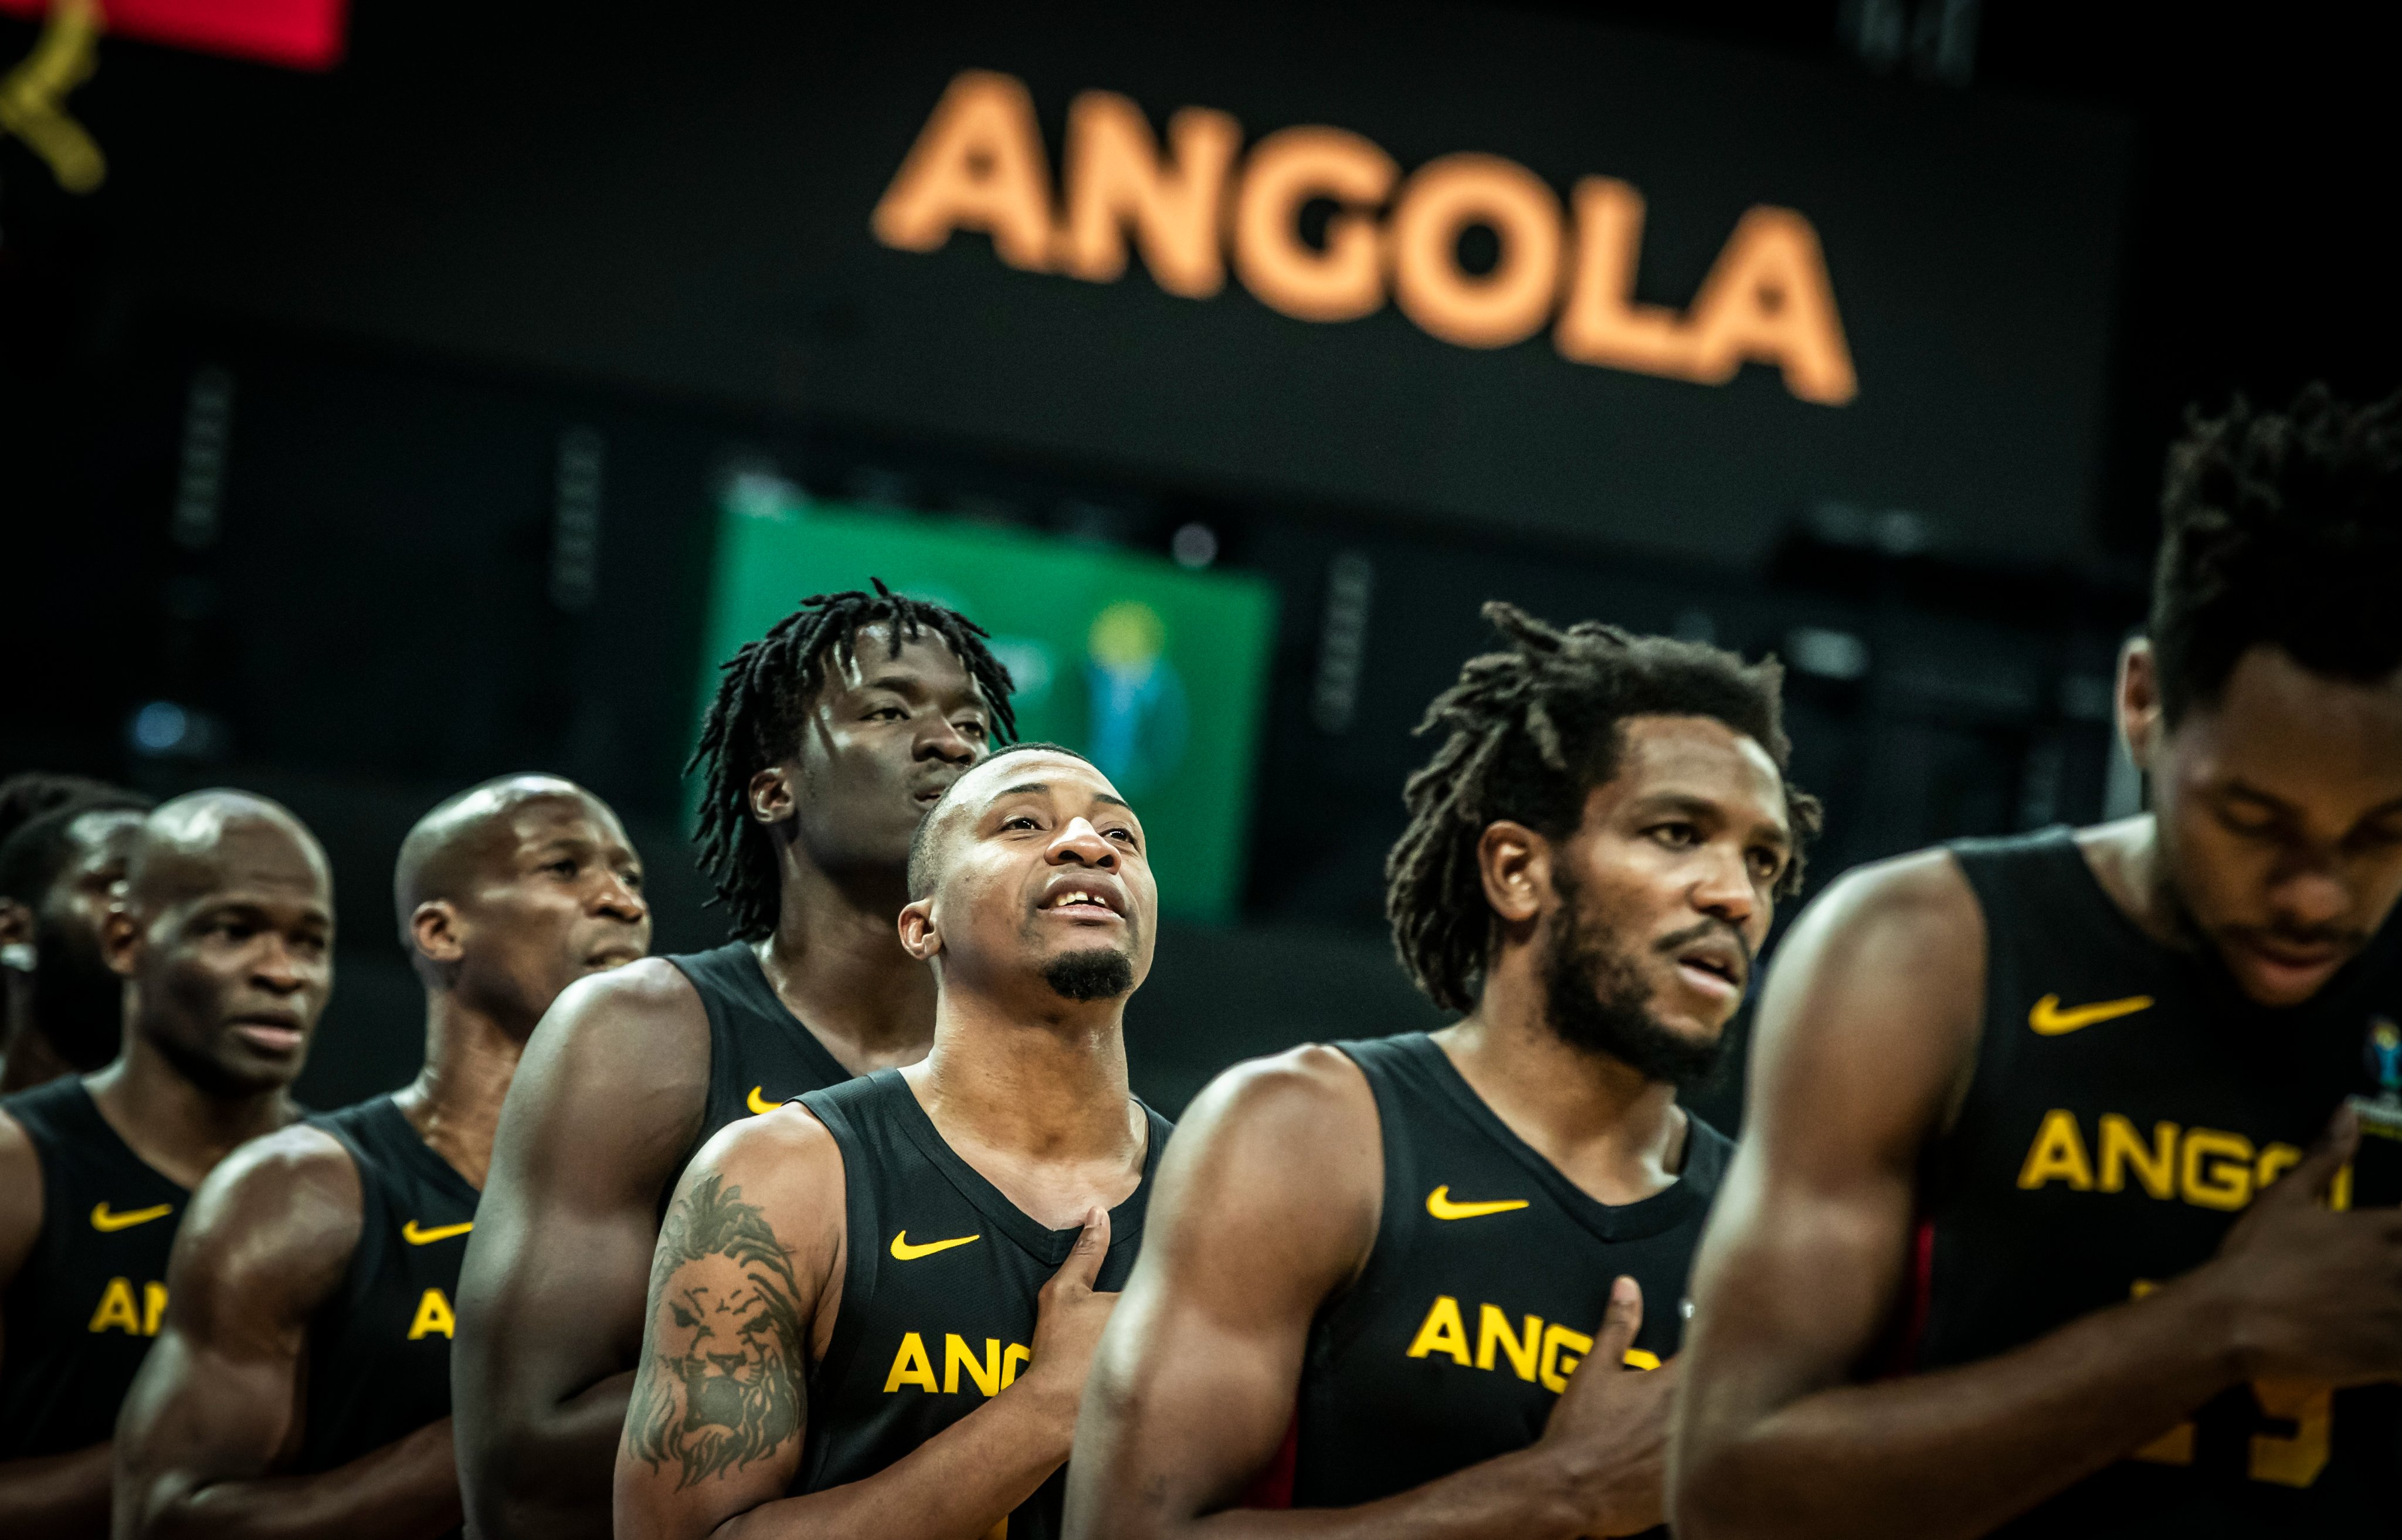 Basquetebol: Angola vai disputar torneio de qualificação aos Jogos